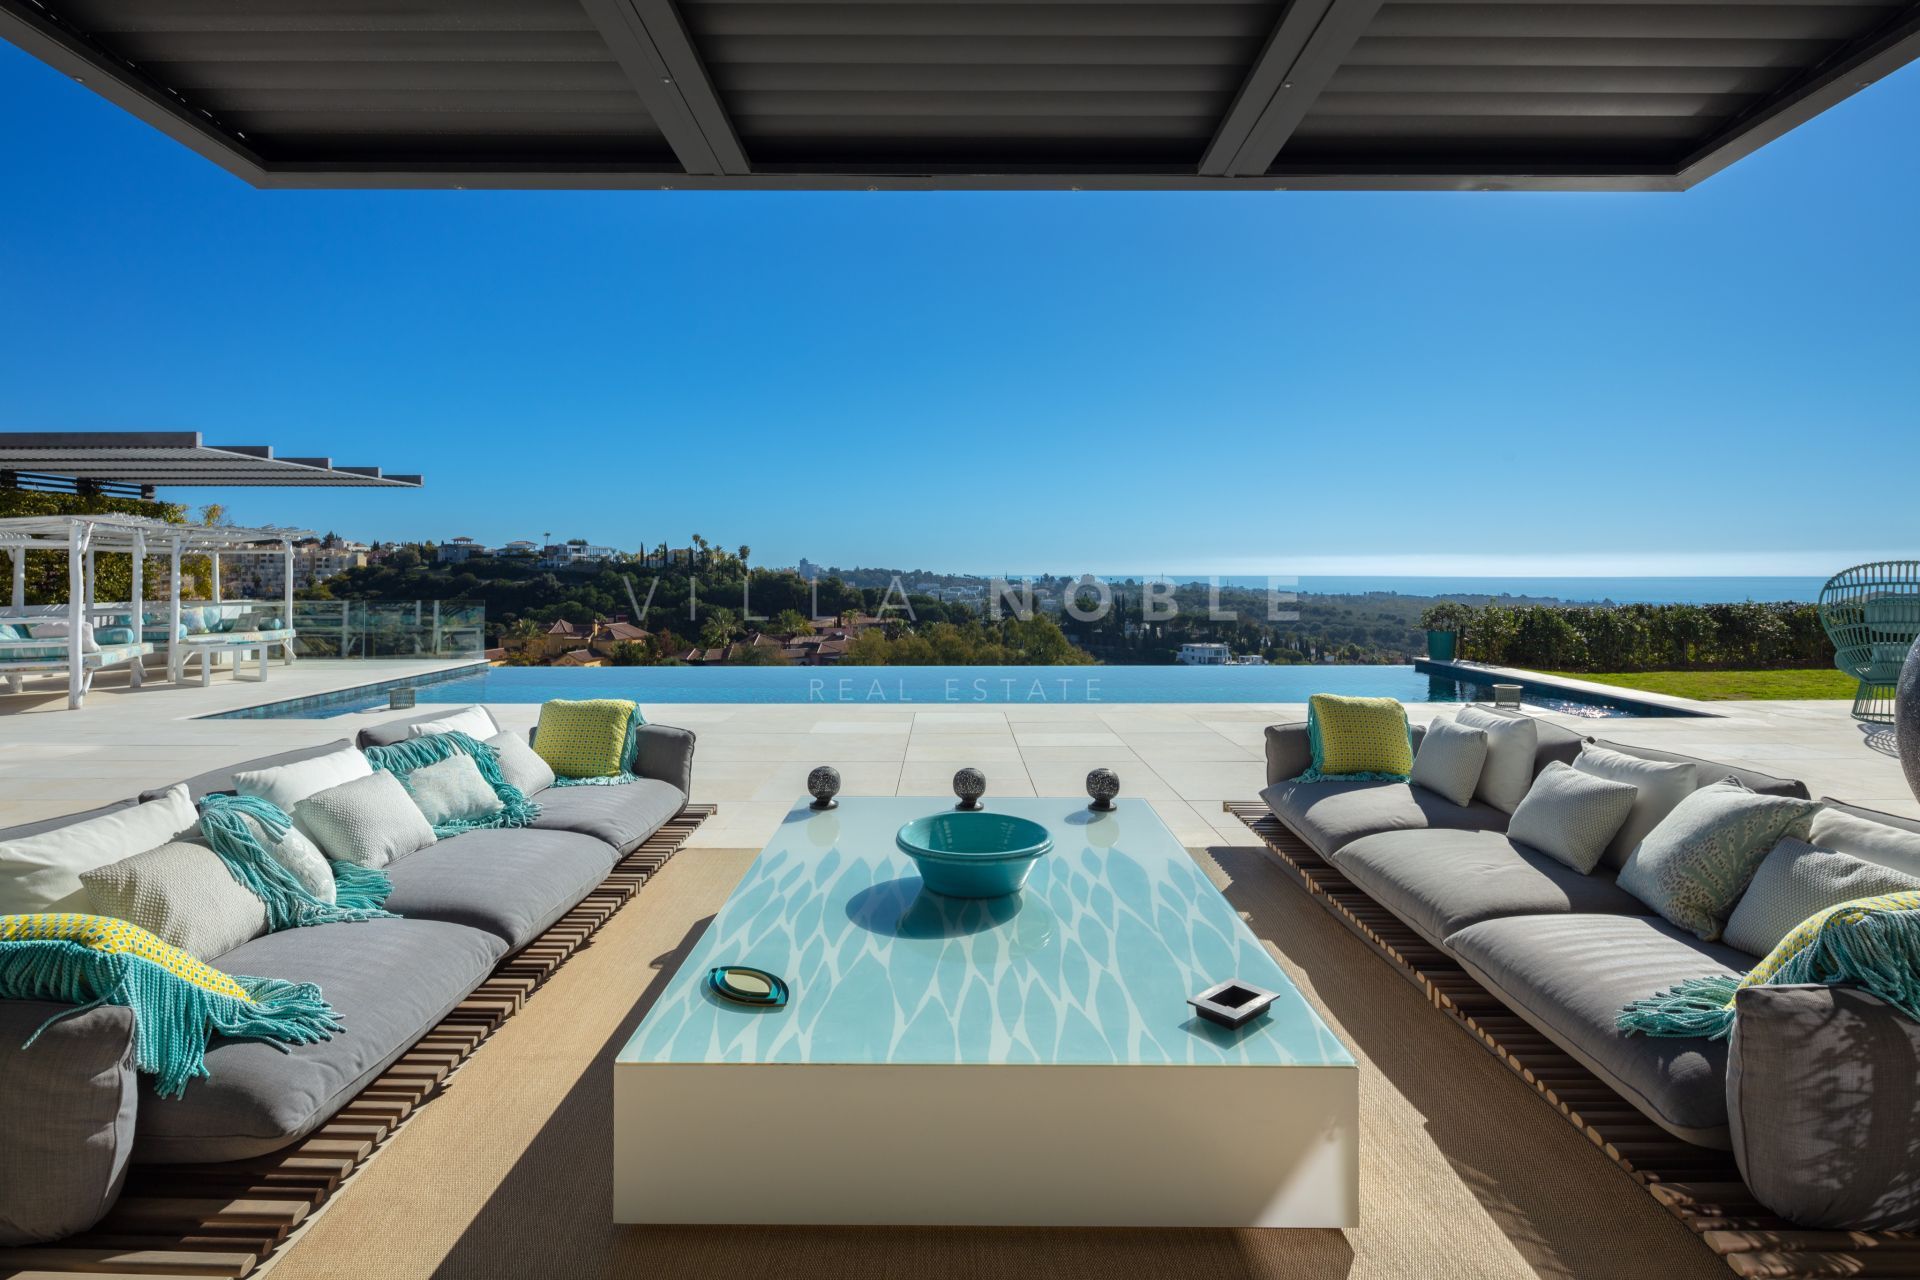 6 Bedrooms Villa with Panoramic Views in Los Flamingos, Marbella